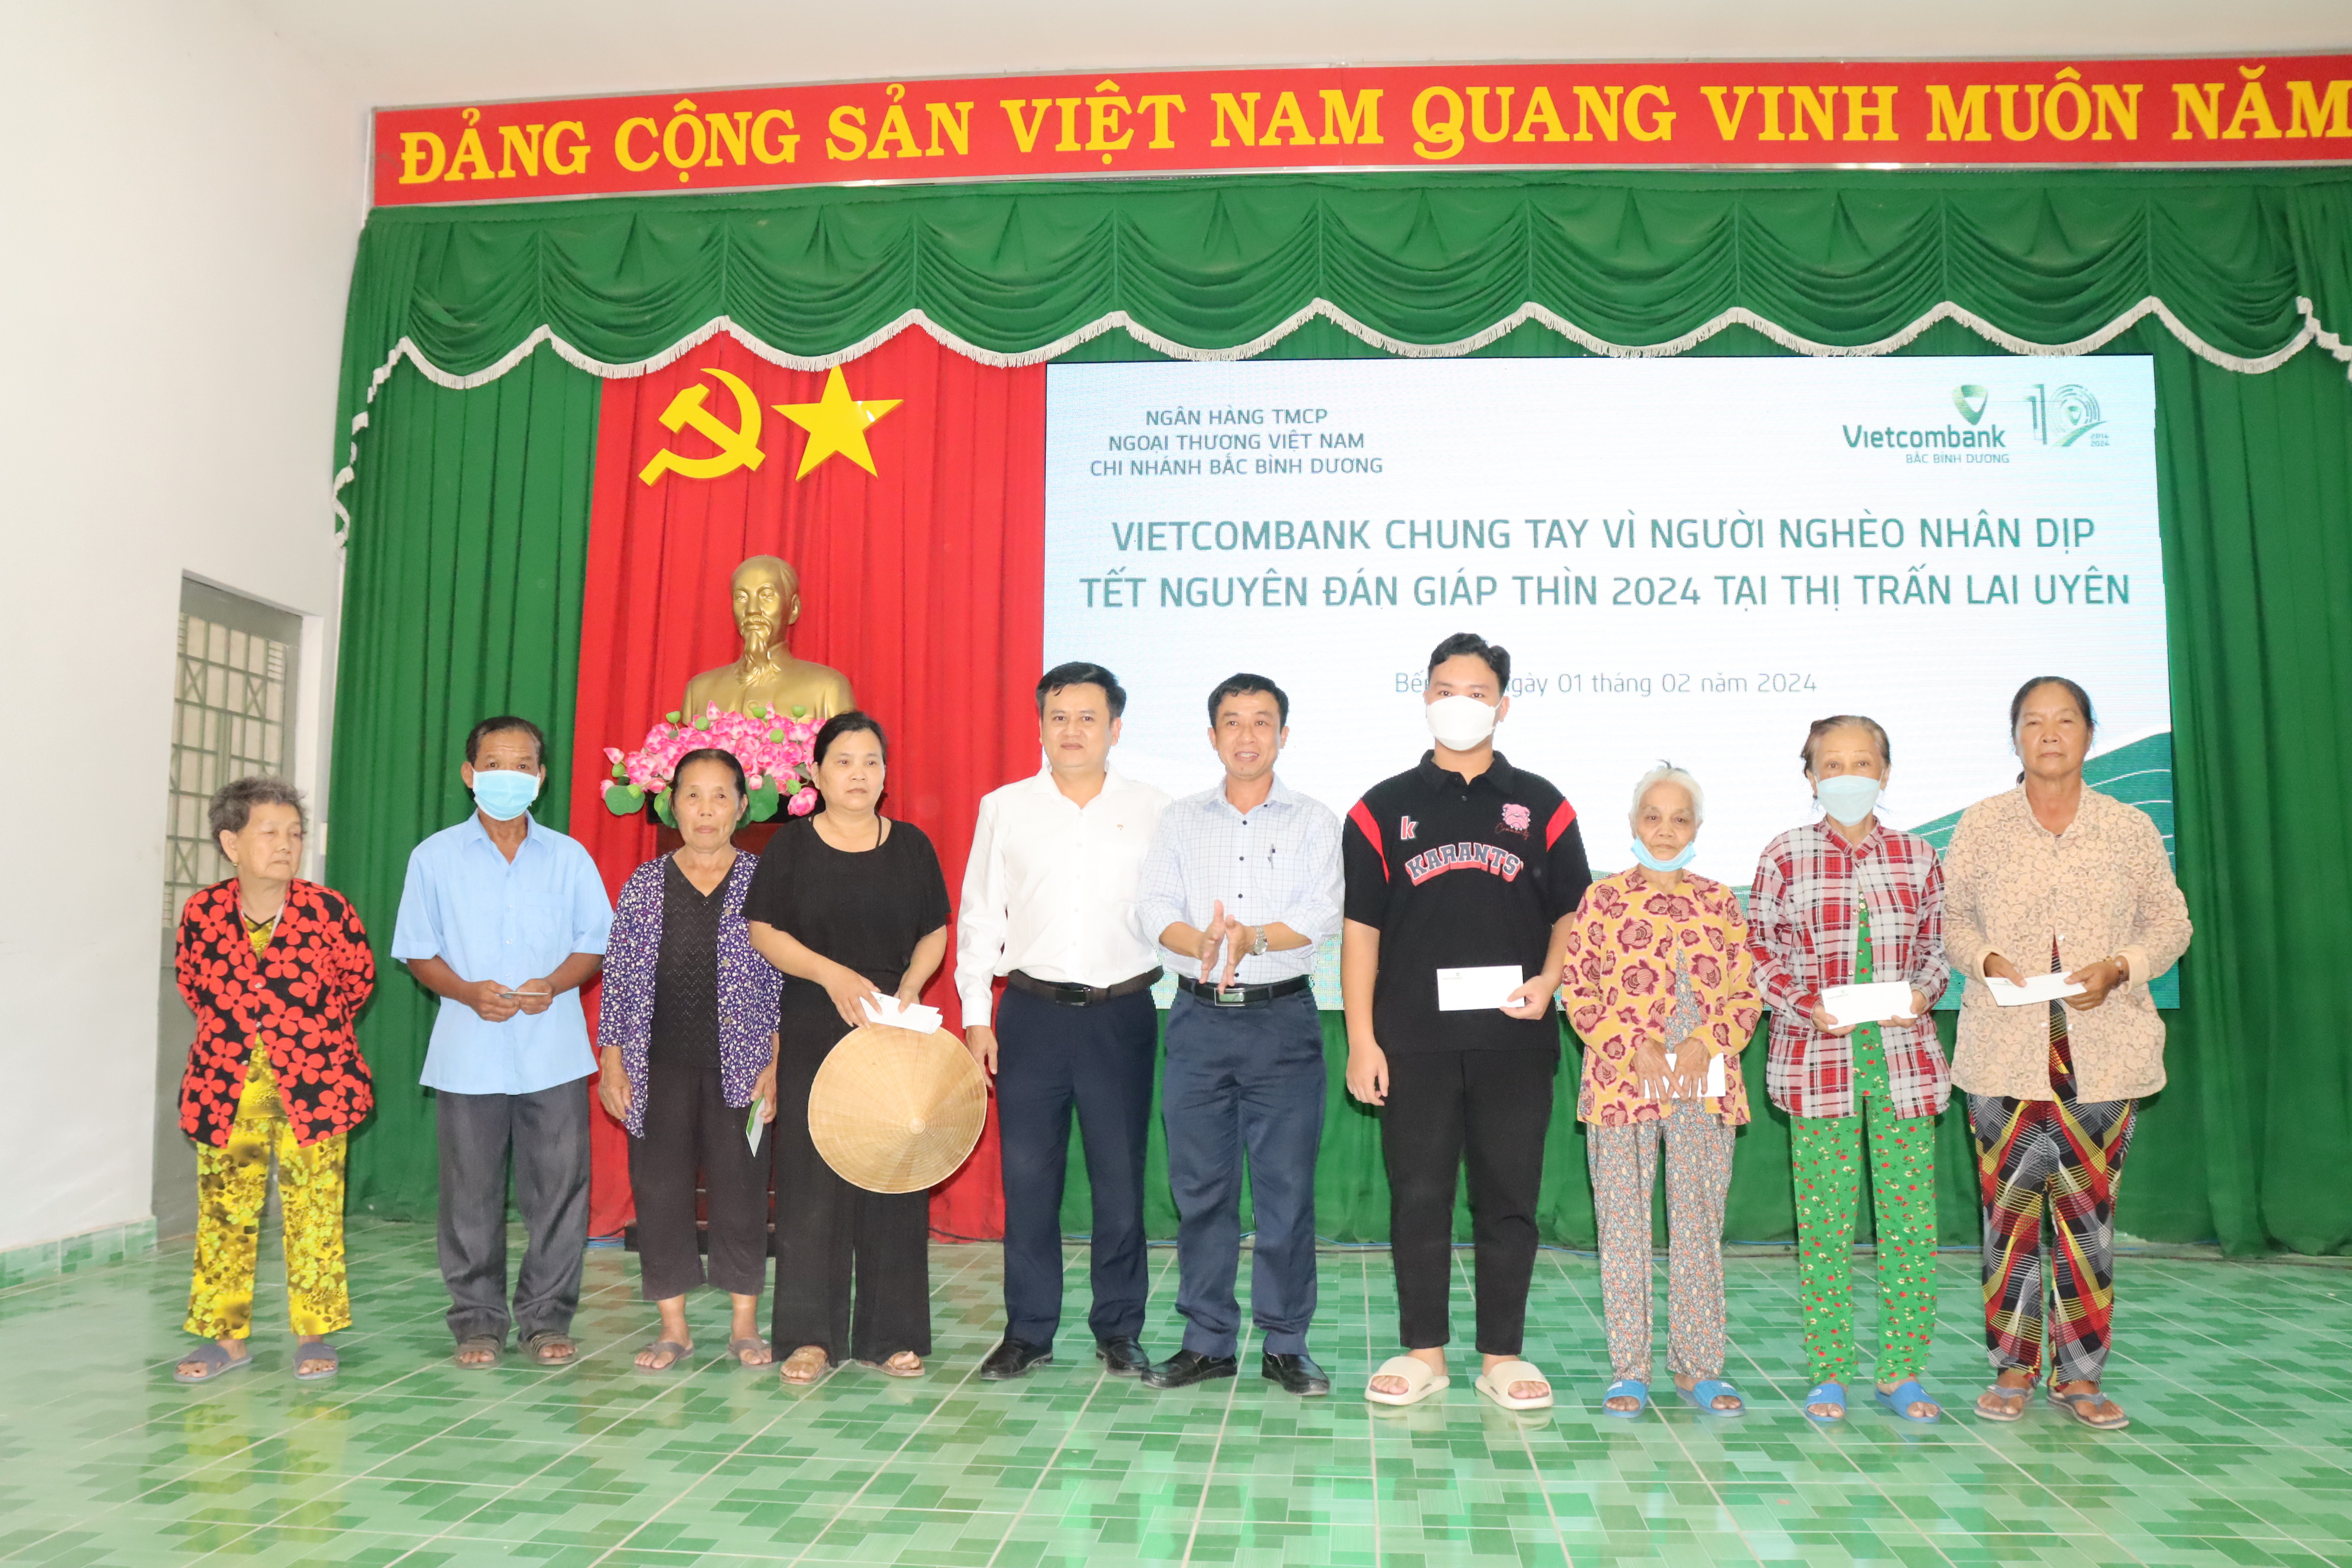 Ngân hàng Vietcombank chung tay vì người nghèo nhân dịp Tết Nguyên đán 2024 trên địa bàn thị trấn Lai Uyên